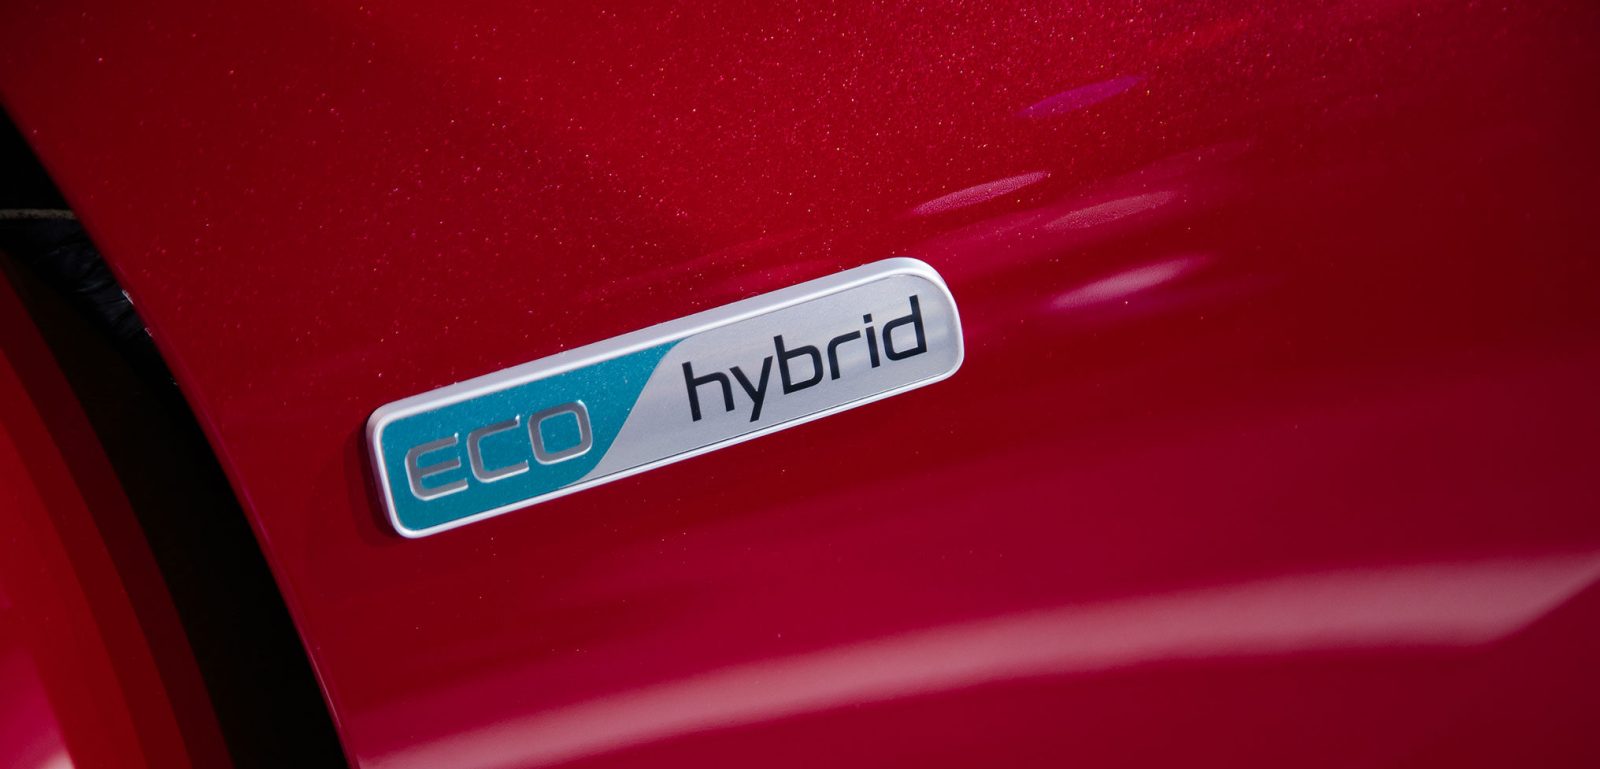 2017 hybrid cars in UK